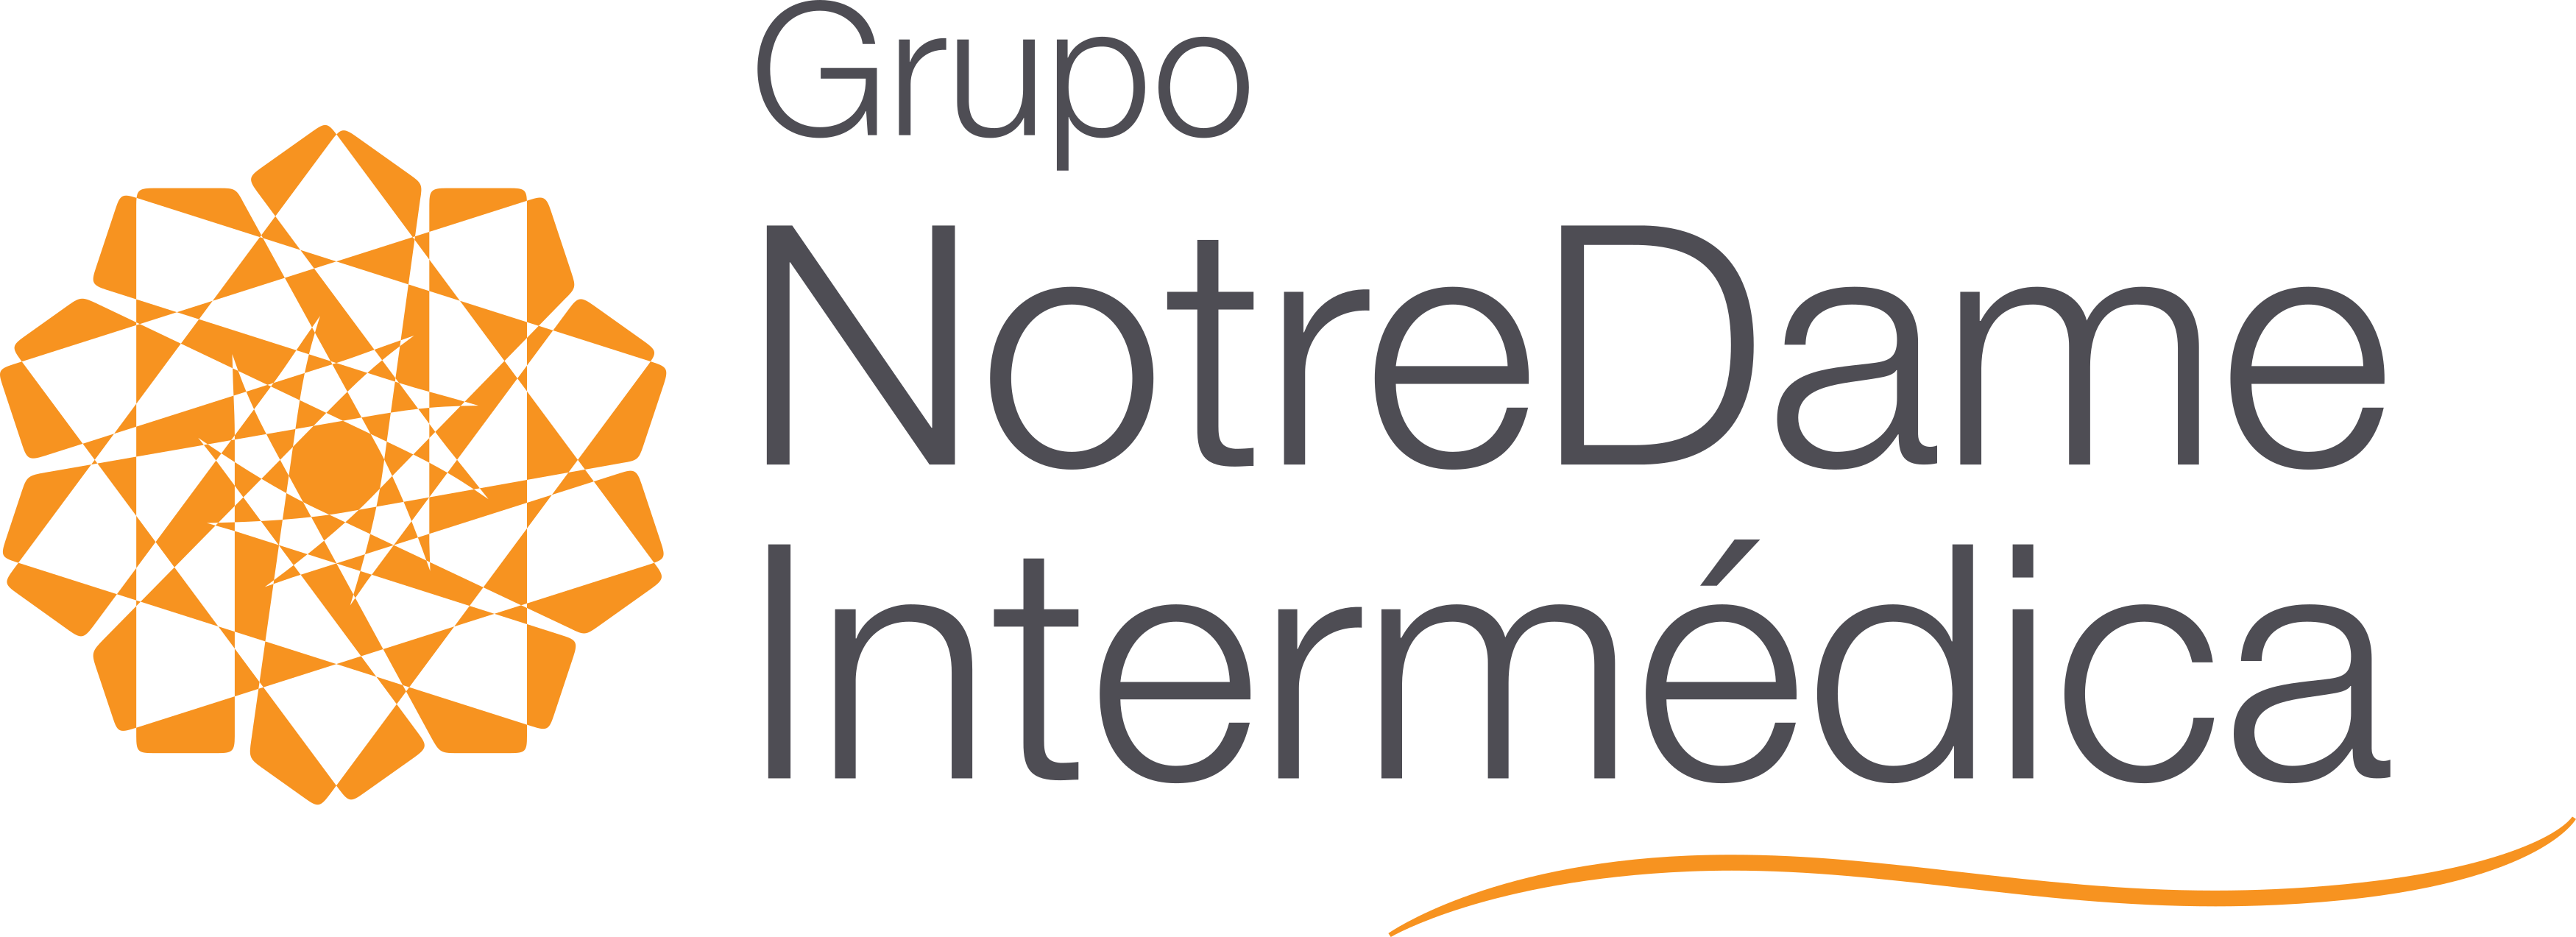 grupo-notredame-intermedica-logo